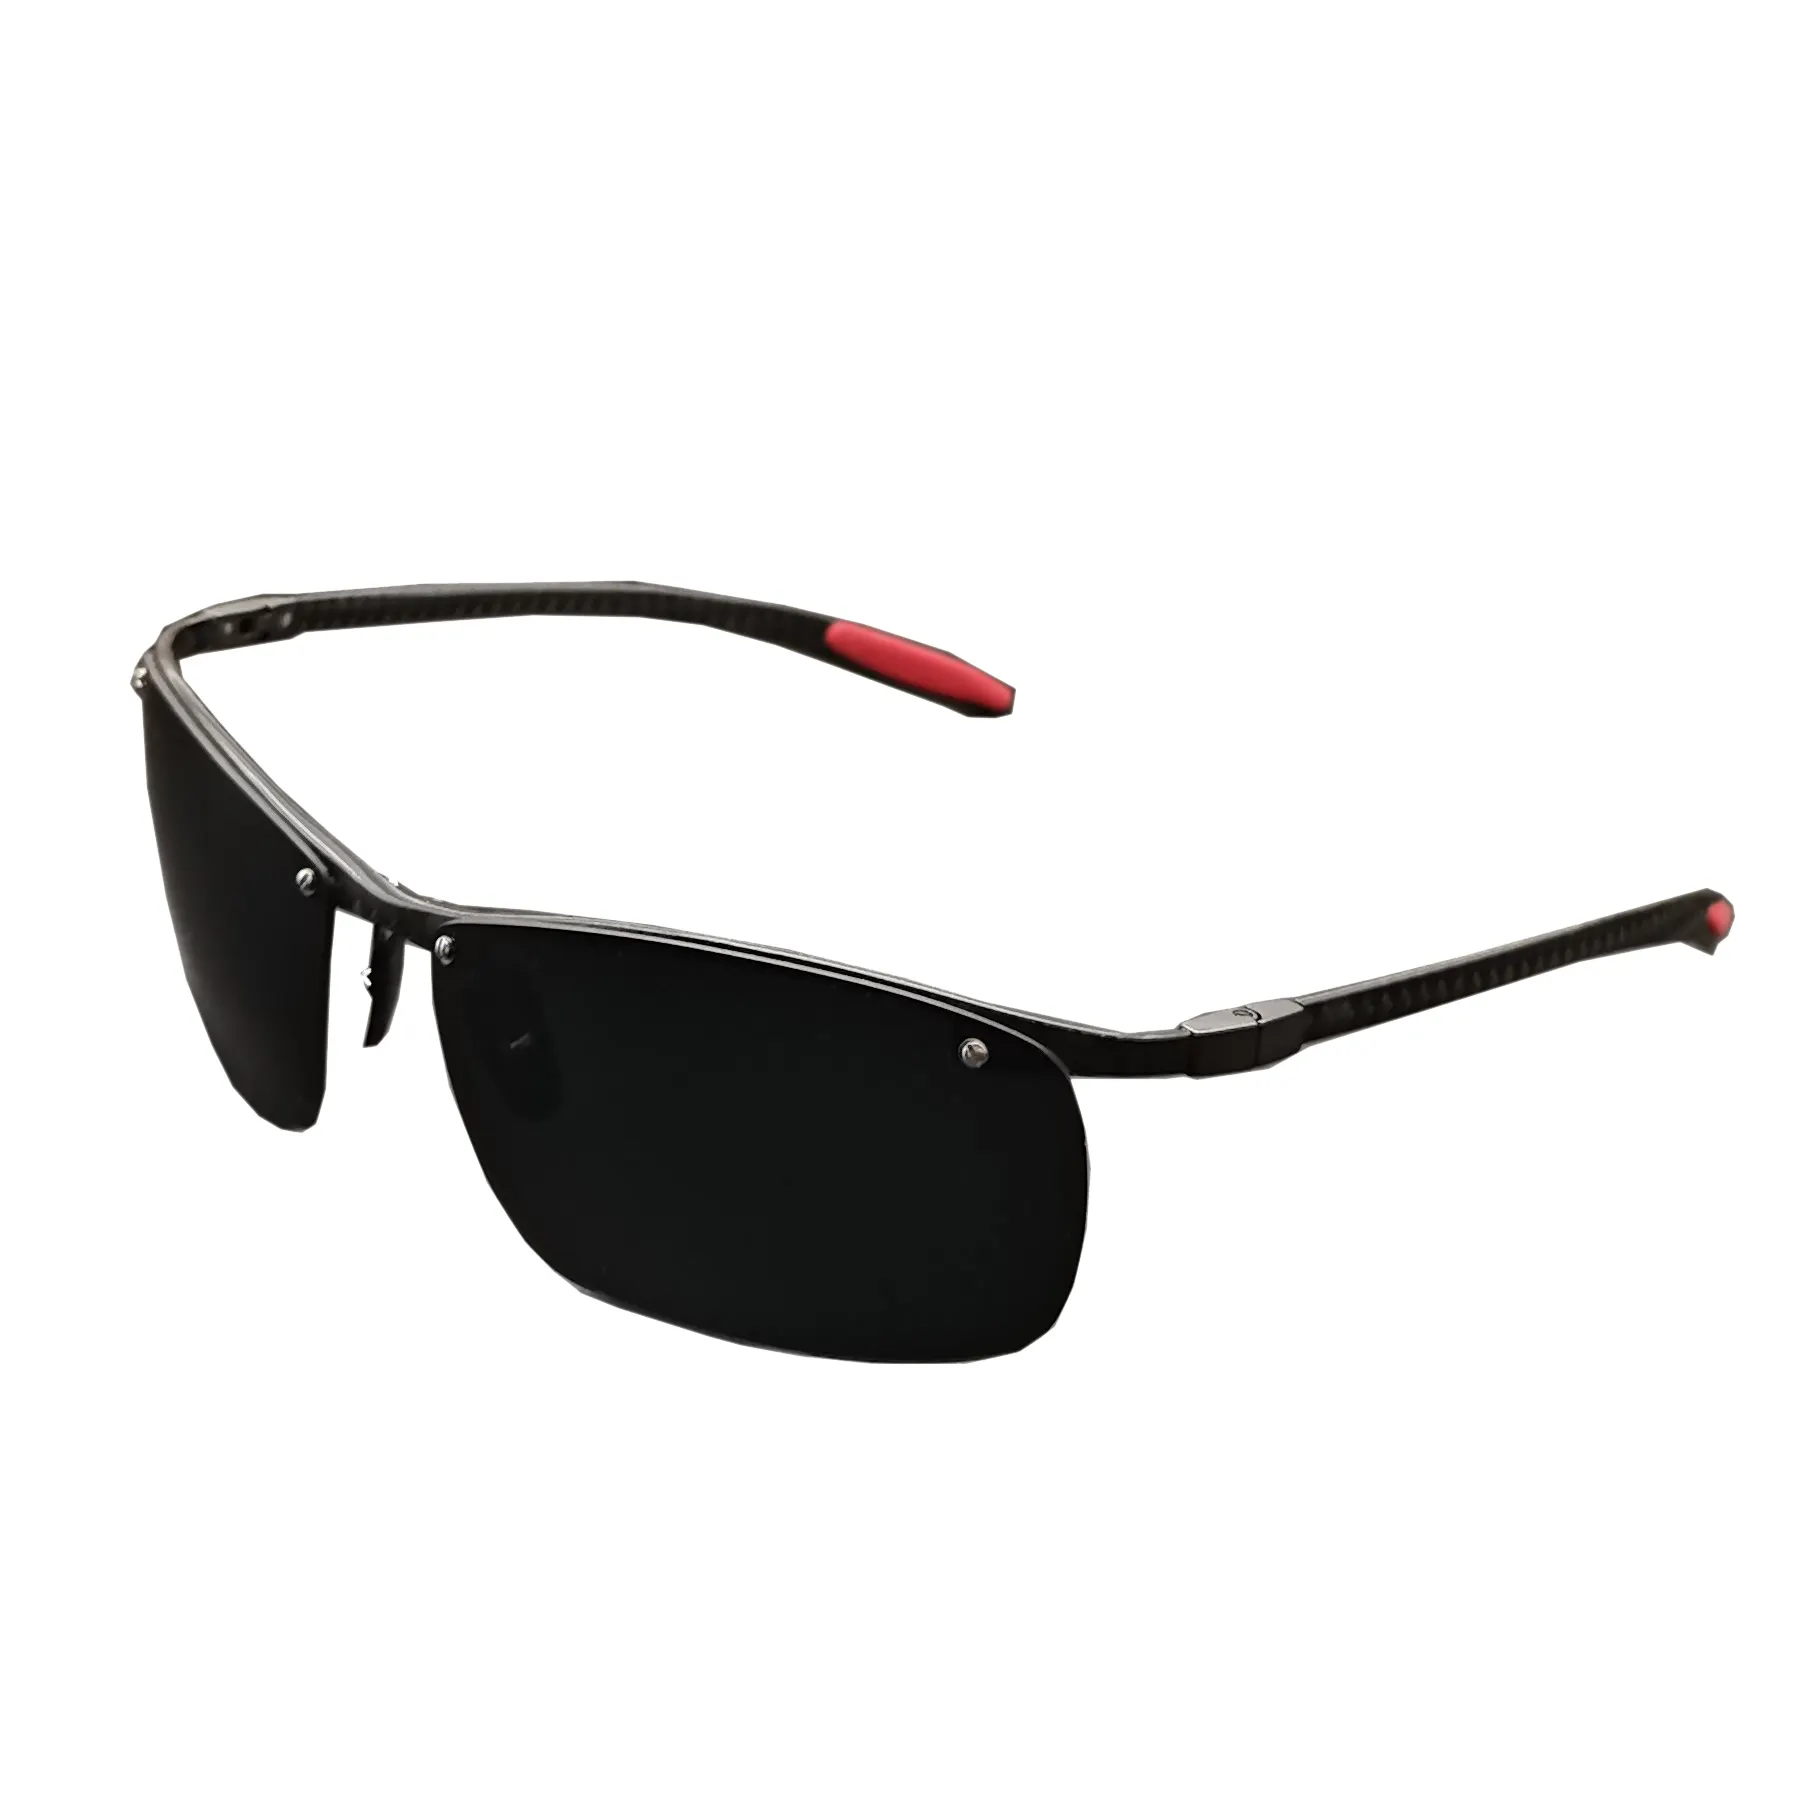 Occhiali da sole polarizzati in fibra di carbonio altamente forti occhiali da sole per gli uomini occhiali sportivi protezione UV design in fibra di carbonio sole